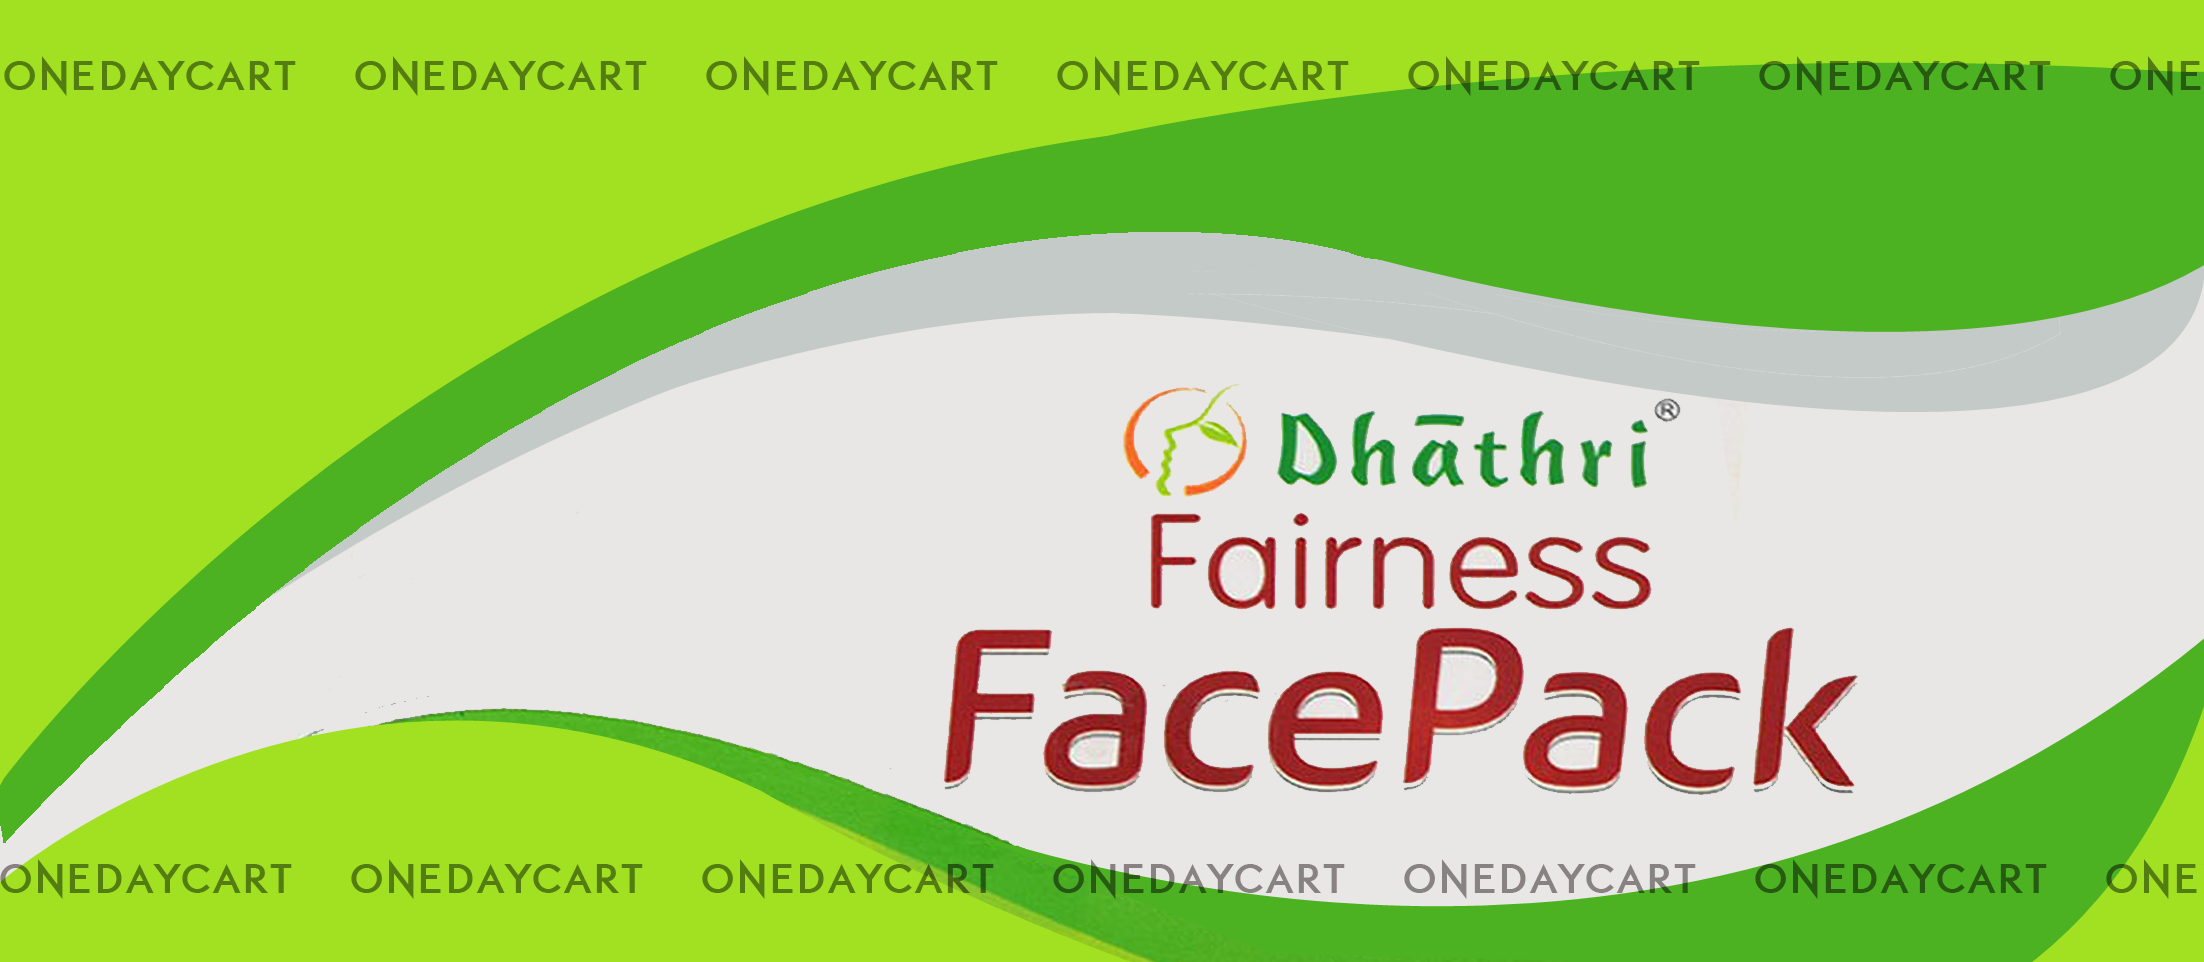 dhathri fairness face pack buy online kochi